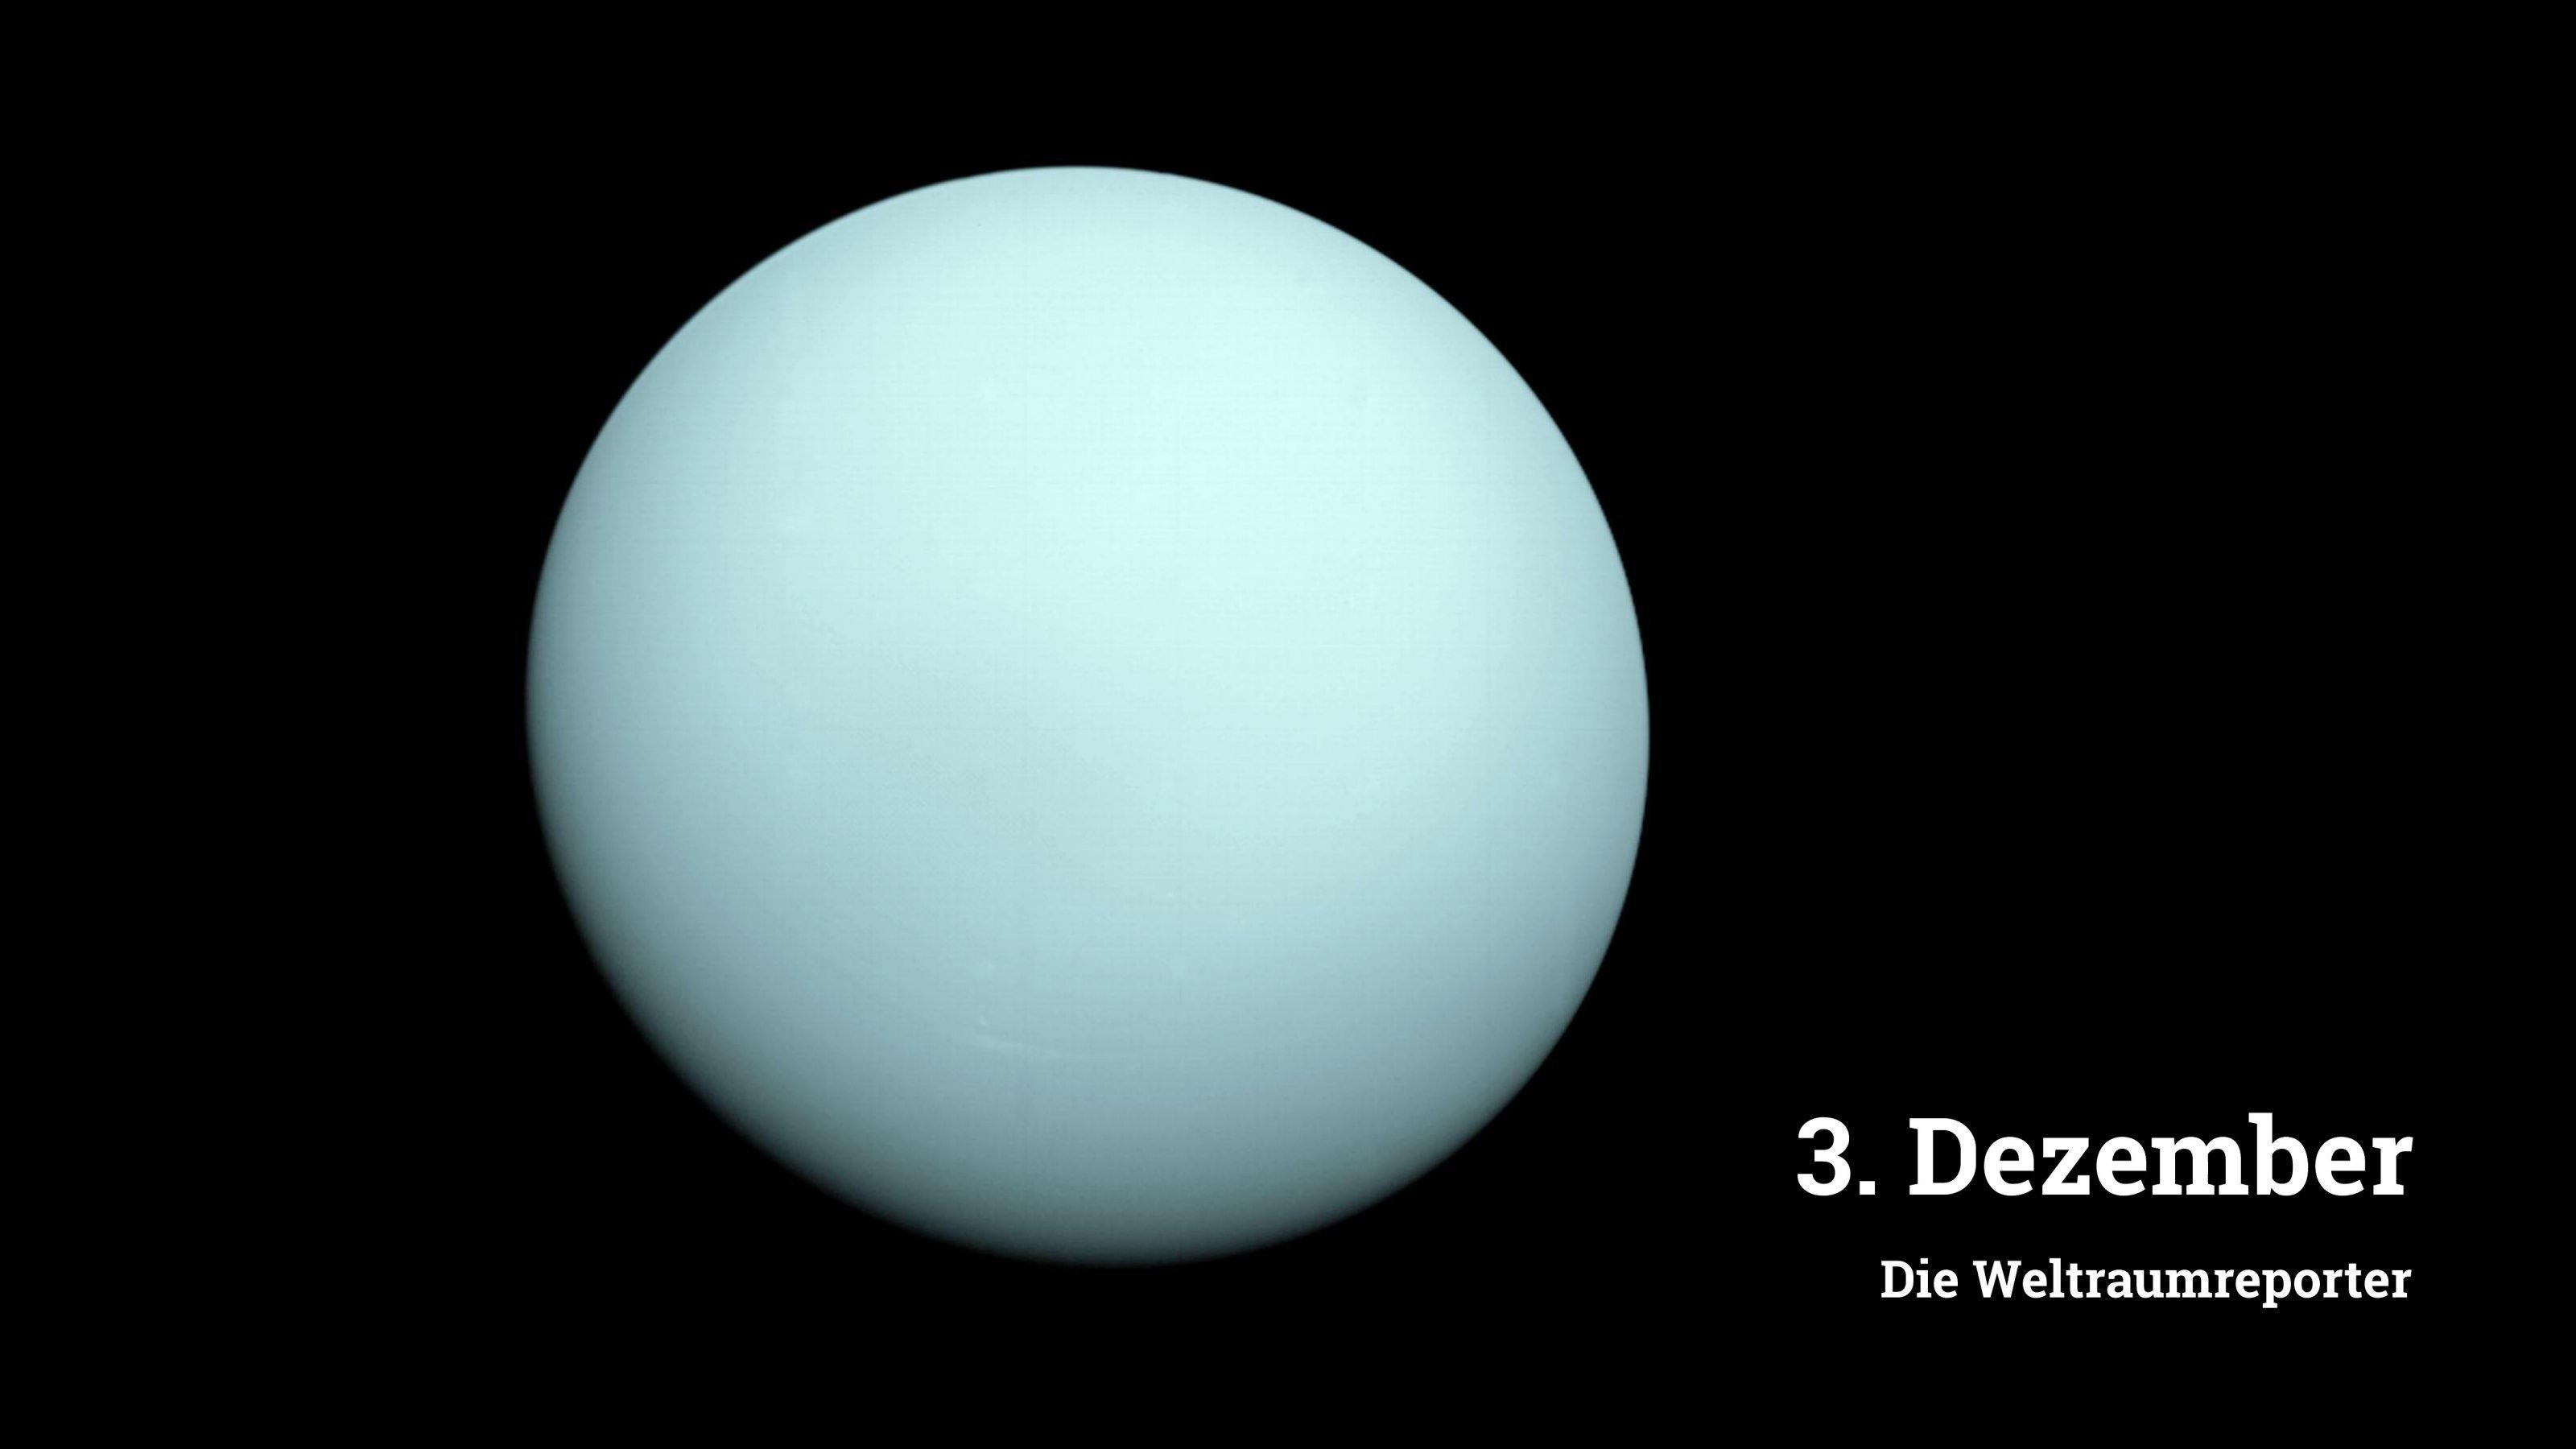 Bläulich-milchige Scheibe des Uranus, aufgenommen mit der Voyager-2-Sonde im Ajhr 1986.